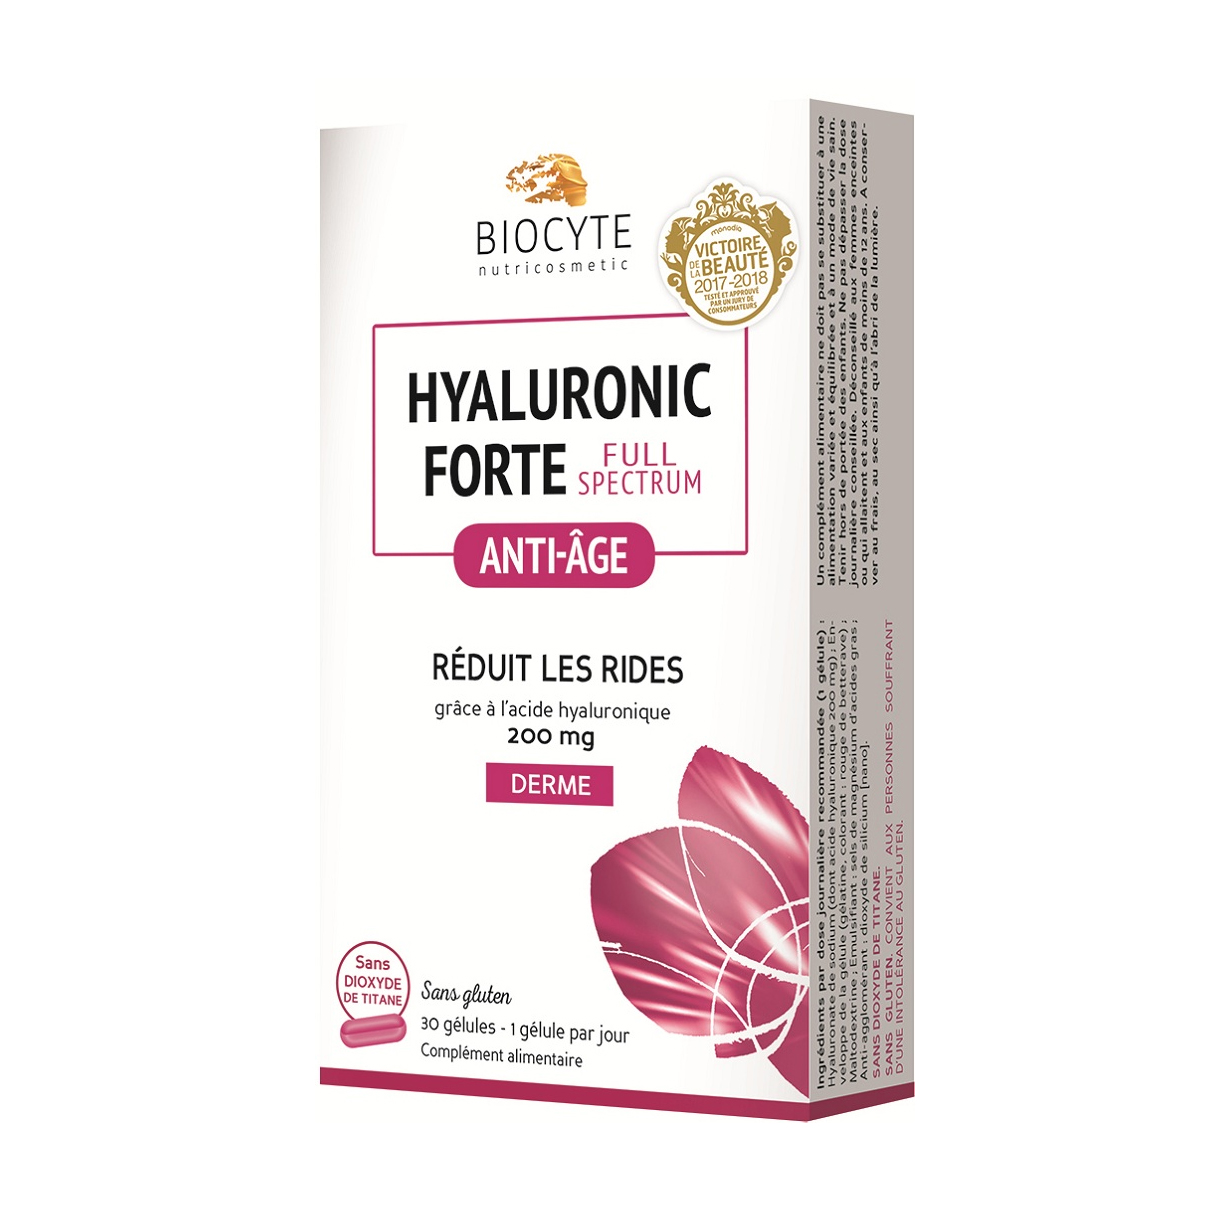 Viên uống Biocyte Hyaluronic Forte Full Spectrum